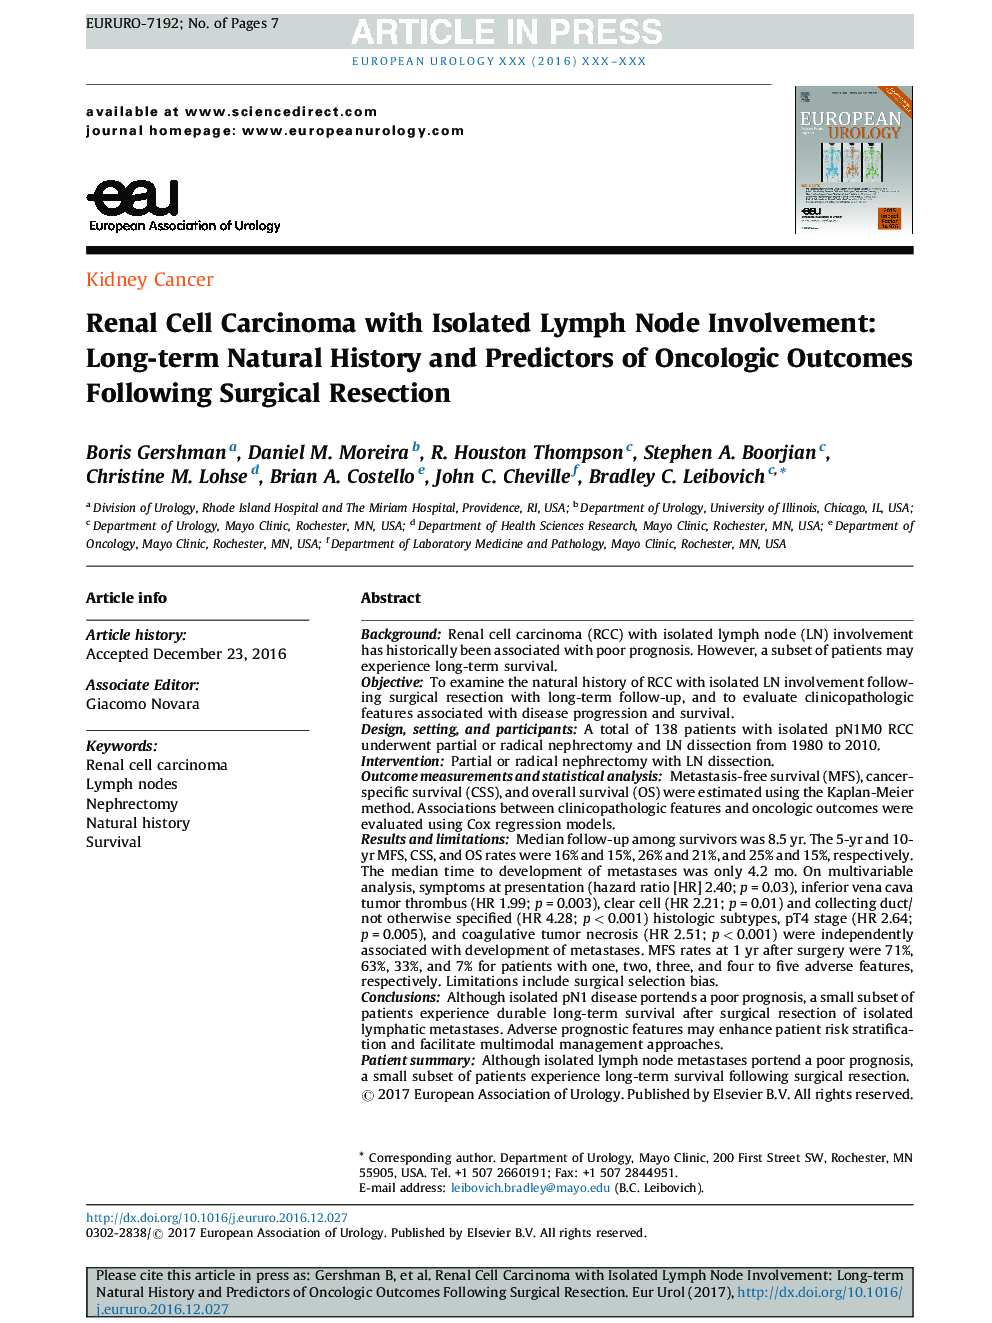 کارسینوم سلولی کلیوی با مشارکت گره های لنفاوی جدا شده: تاریخچه طبیعی طولانی مدت و پیش بینی های نتایج انکولوژیک پس از عمل جراحی 